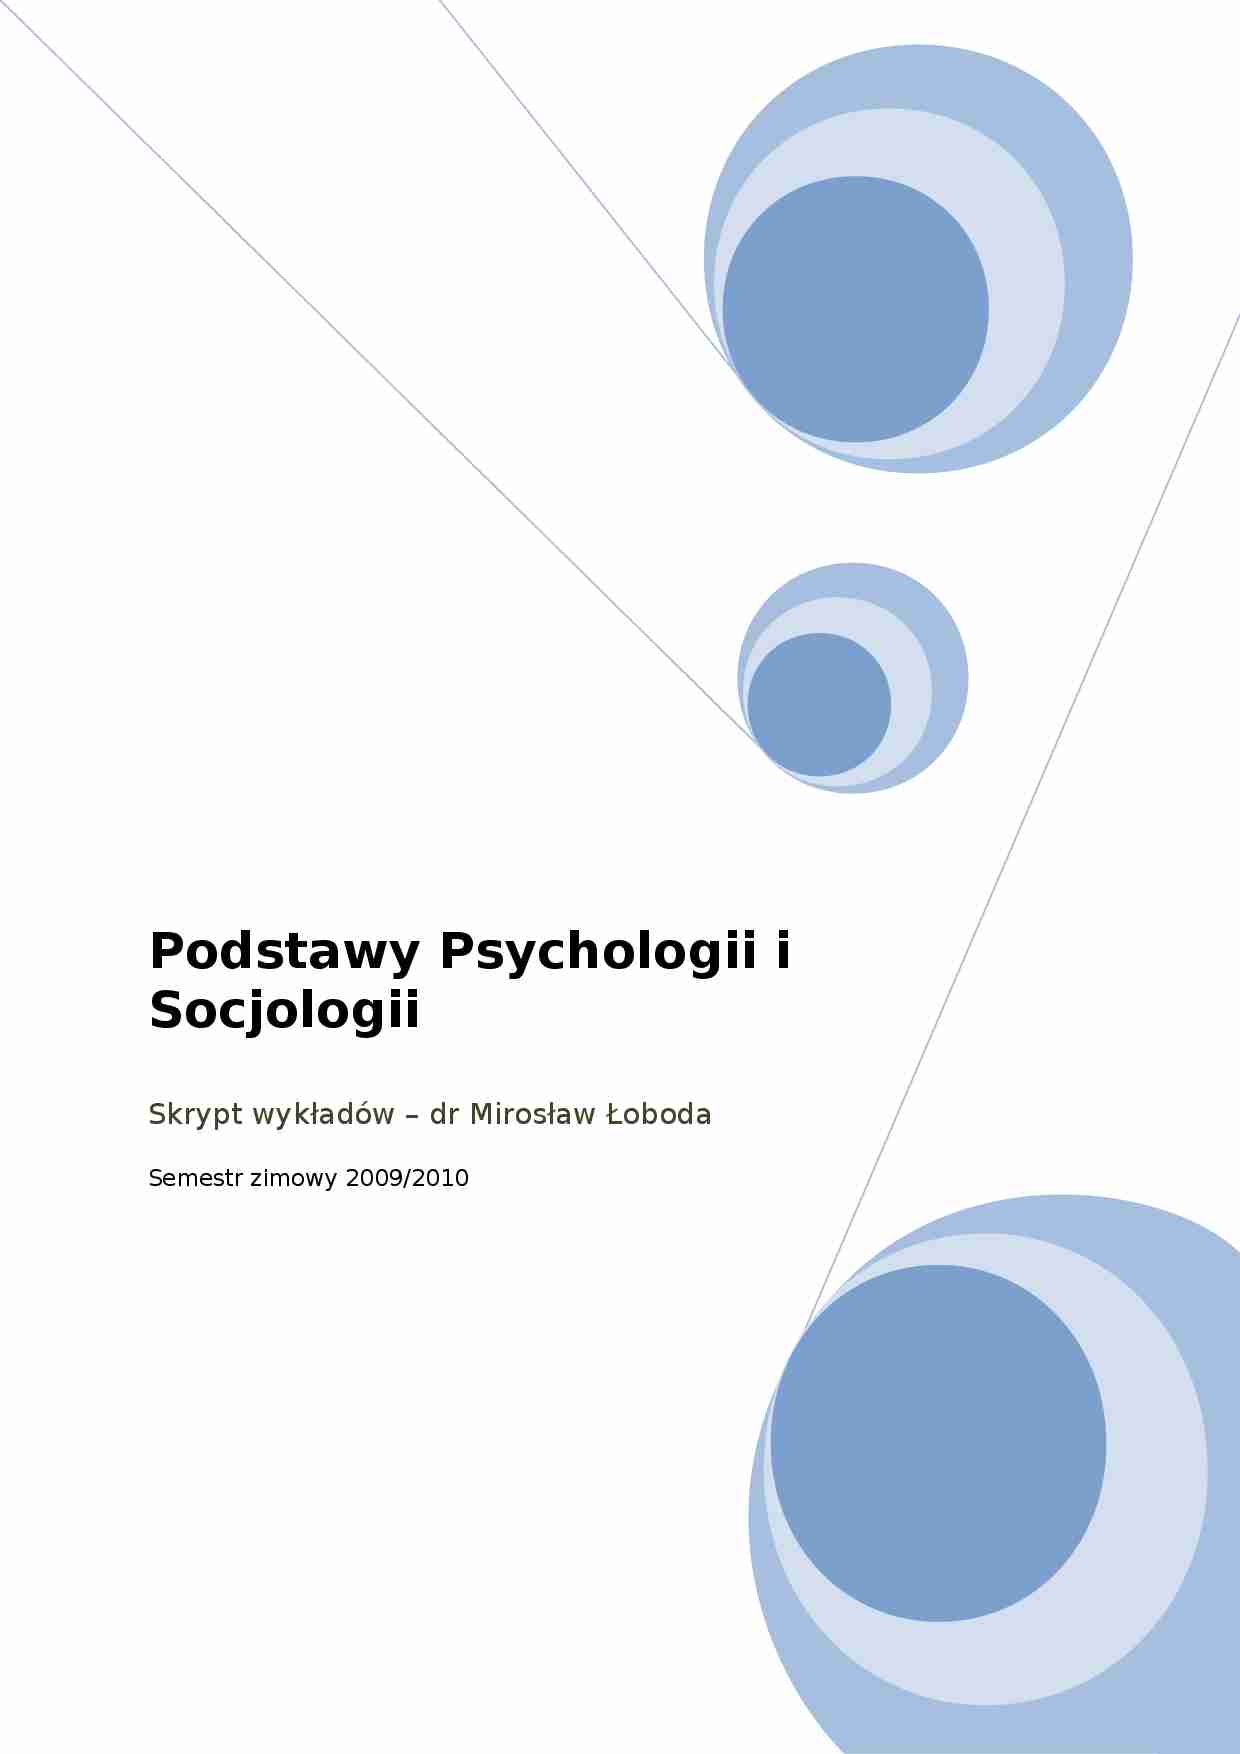 Podstawy Psychologii i Socjologii - całość wykładów (sem 1) - strona 1